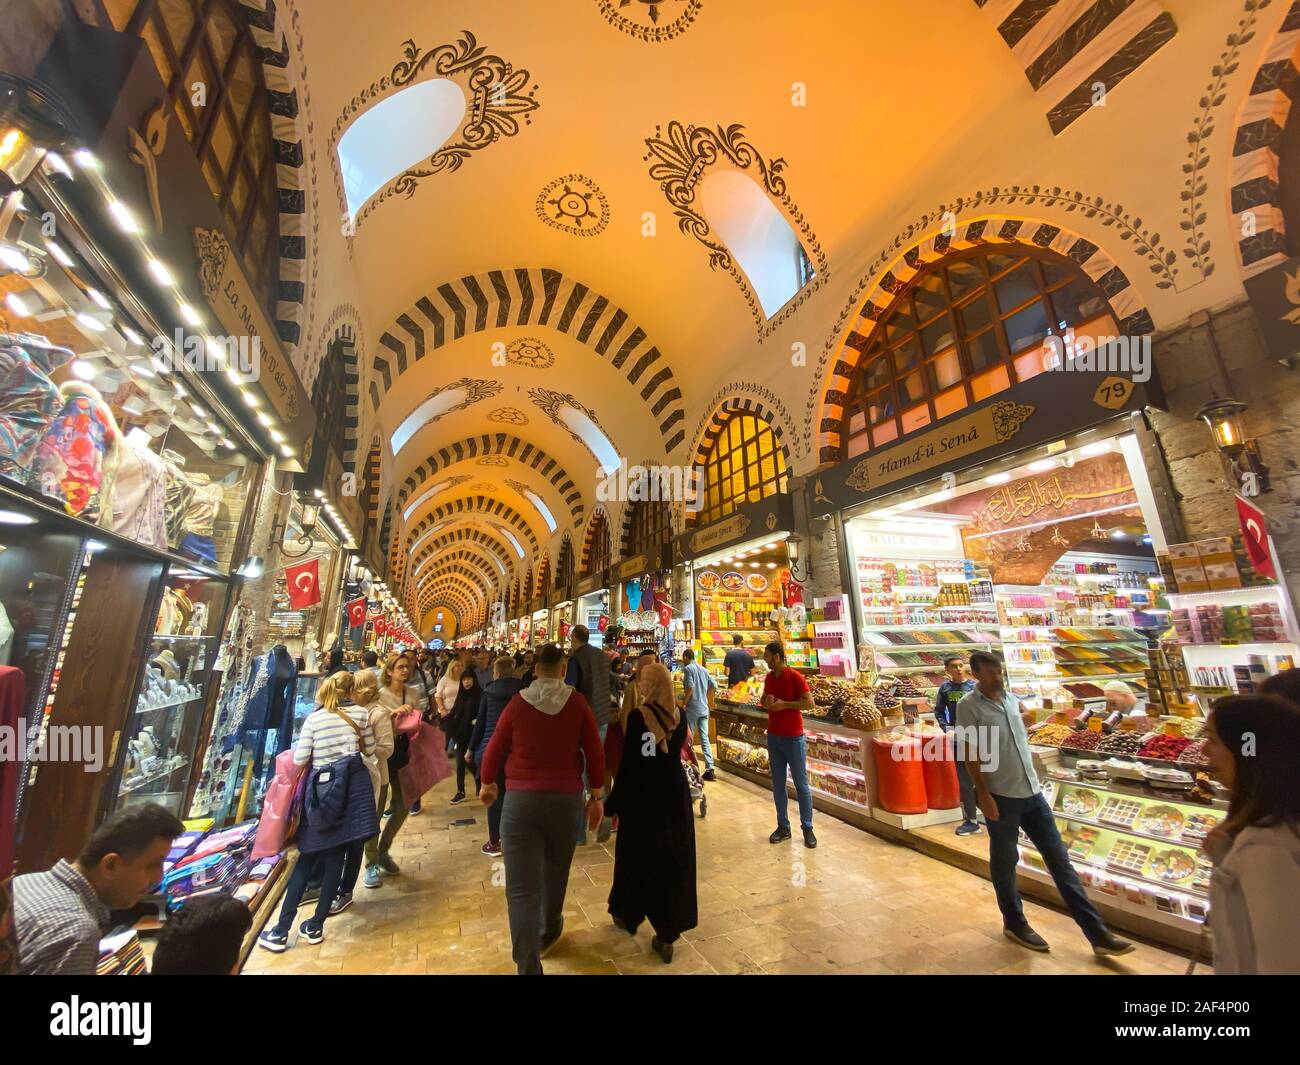 Bazar Egyptien, Istanbul, Turquie, le 28 octobre 2019. Les gens sont sur le Bazar Egyptien. Marché aux épices. Le Grand Bazar d'Istanbul. Les gens et les touristes Banque D'Images